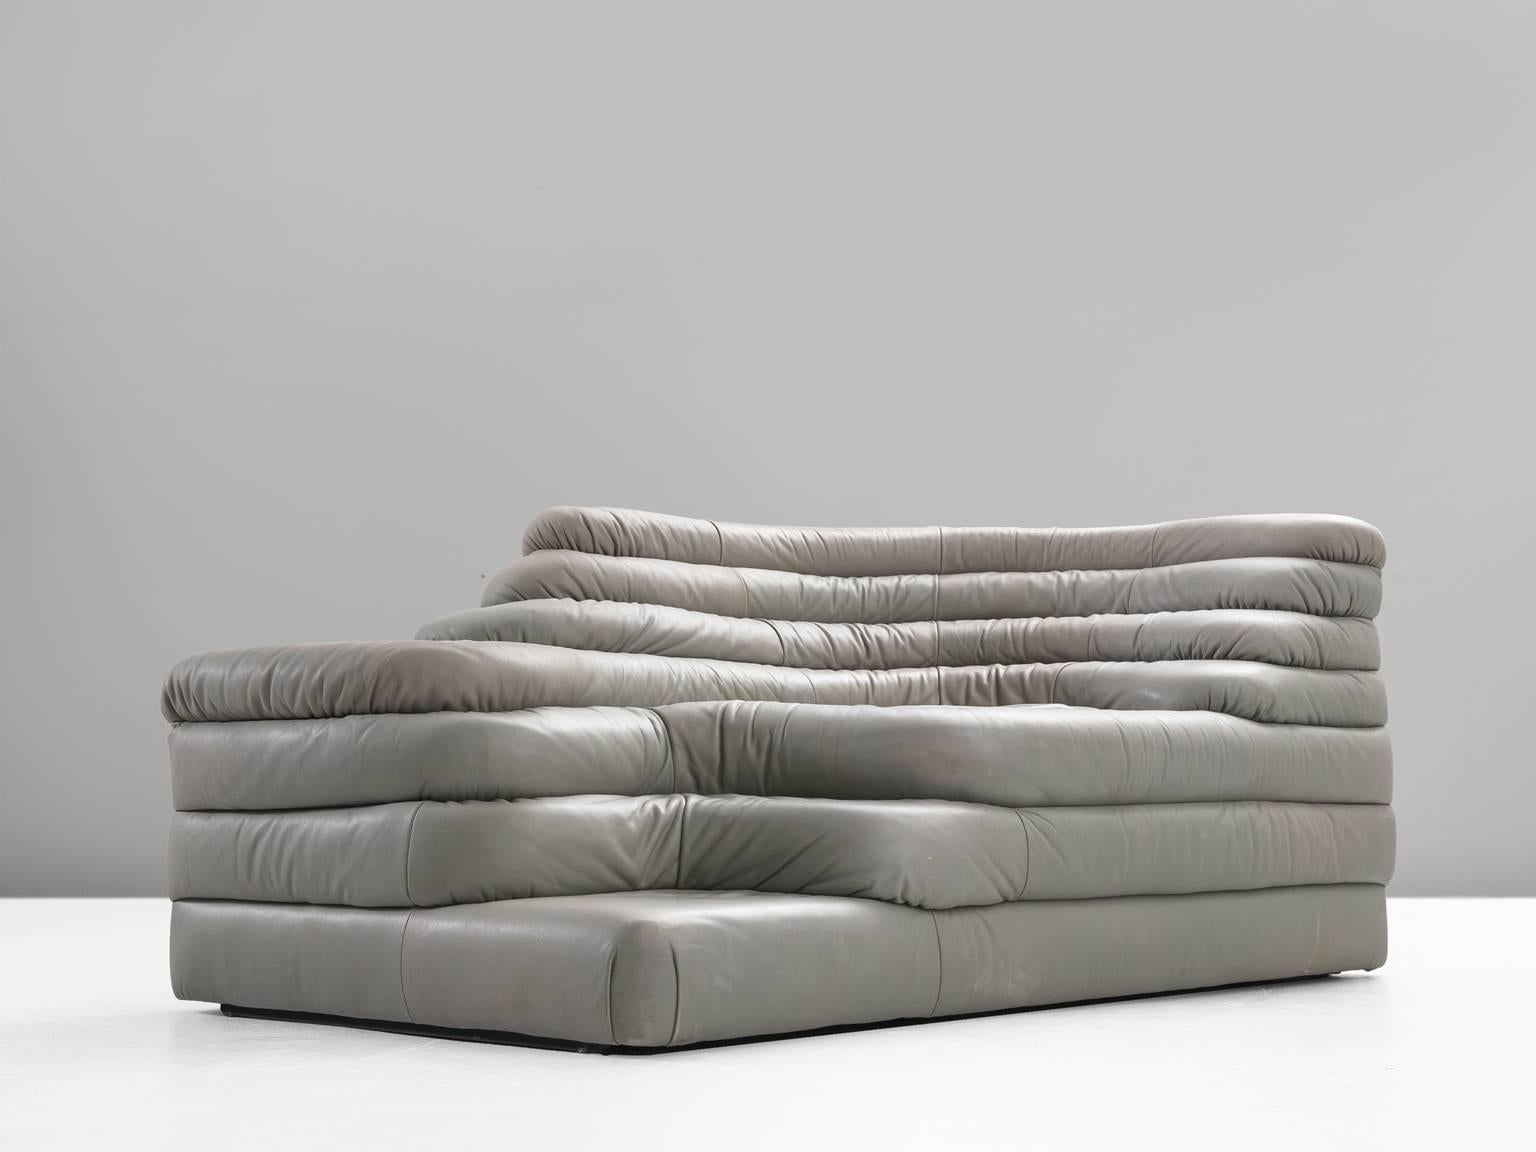 Post-Modern De Sede 'Terrazza' Landscape in Grey Leather